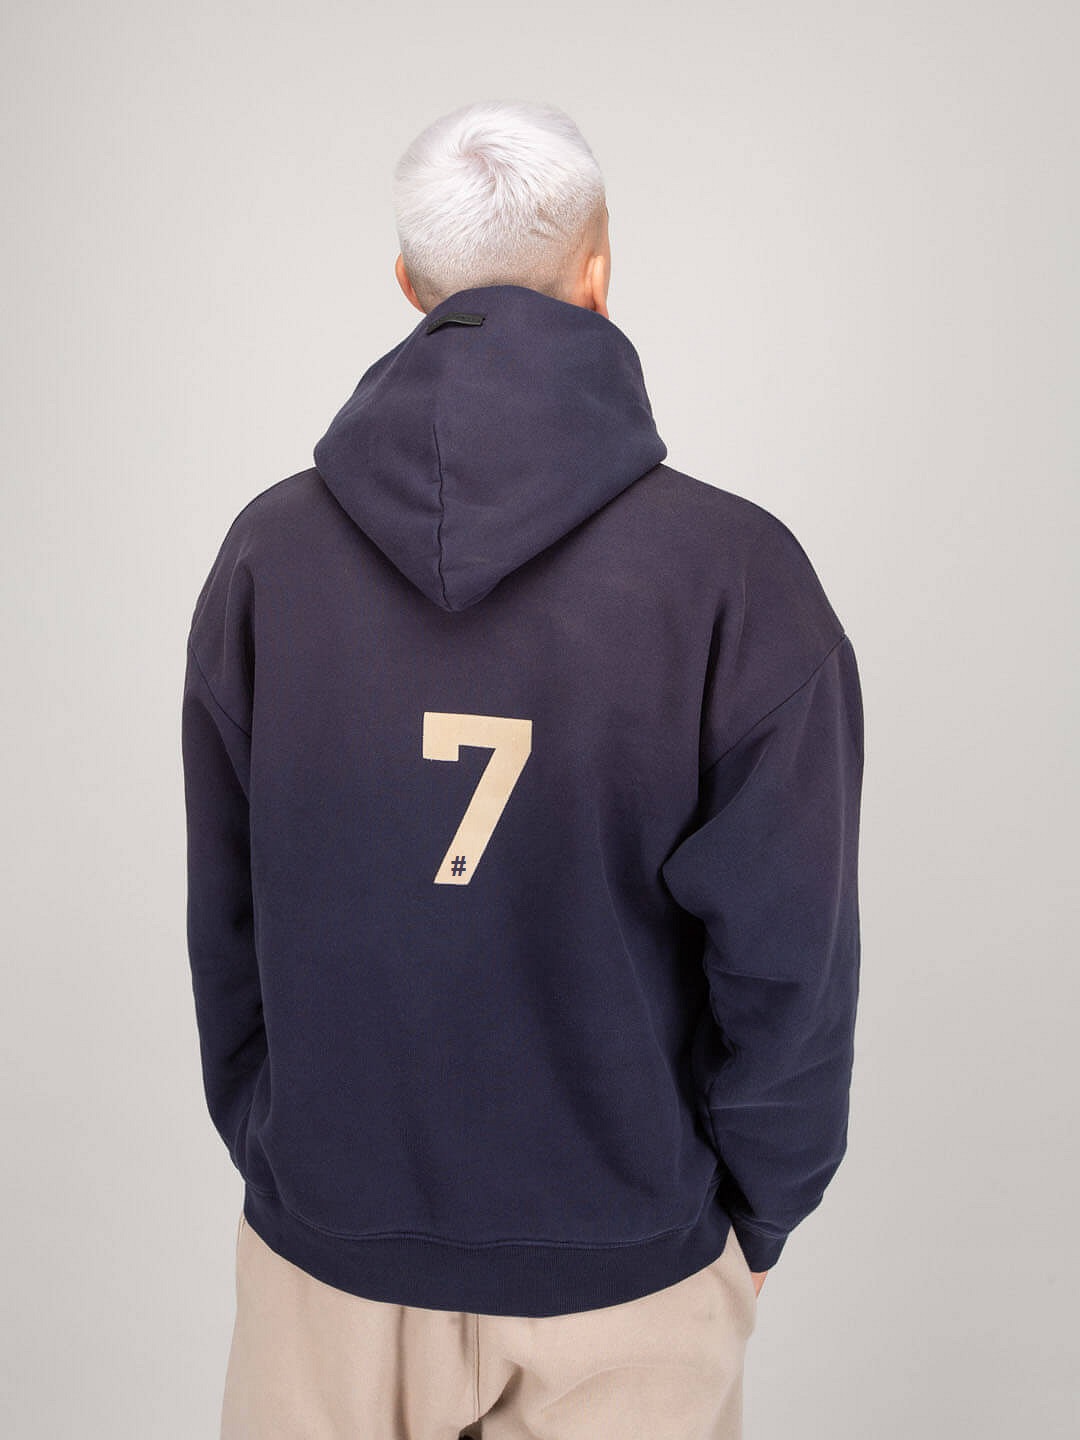 #7 hoodie vintage navy 1